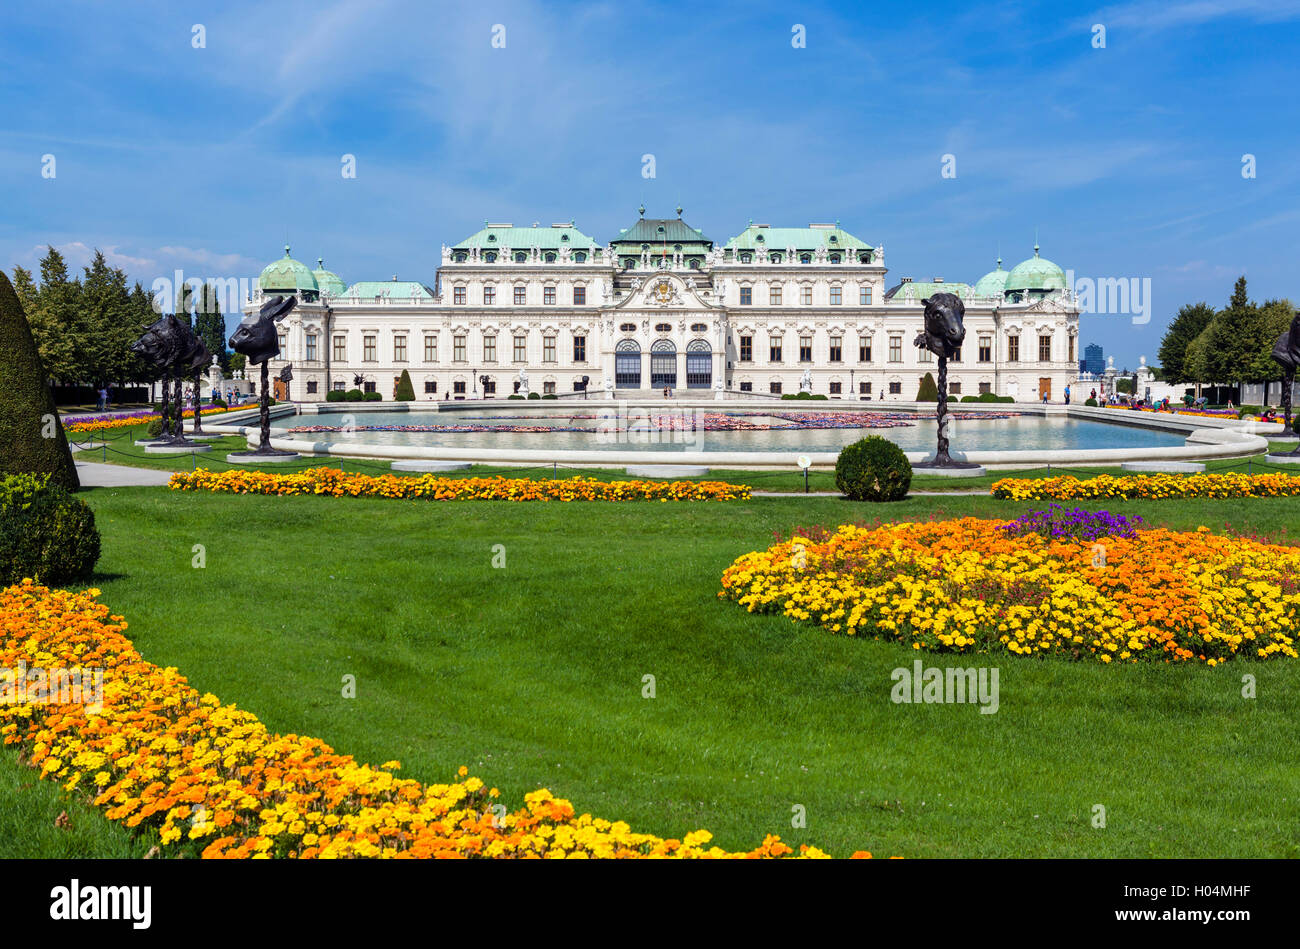 La Oberes Belvedere, palazzo estivo del principe Eugenio di Savoia, Vienna, Austria Foto Stock